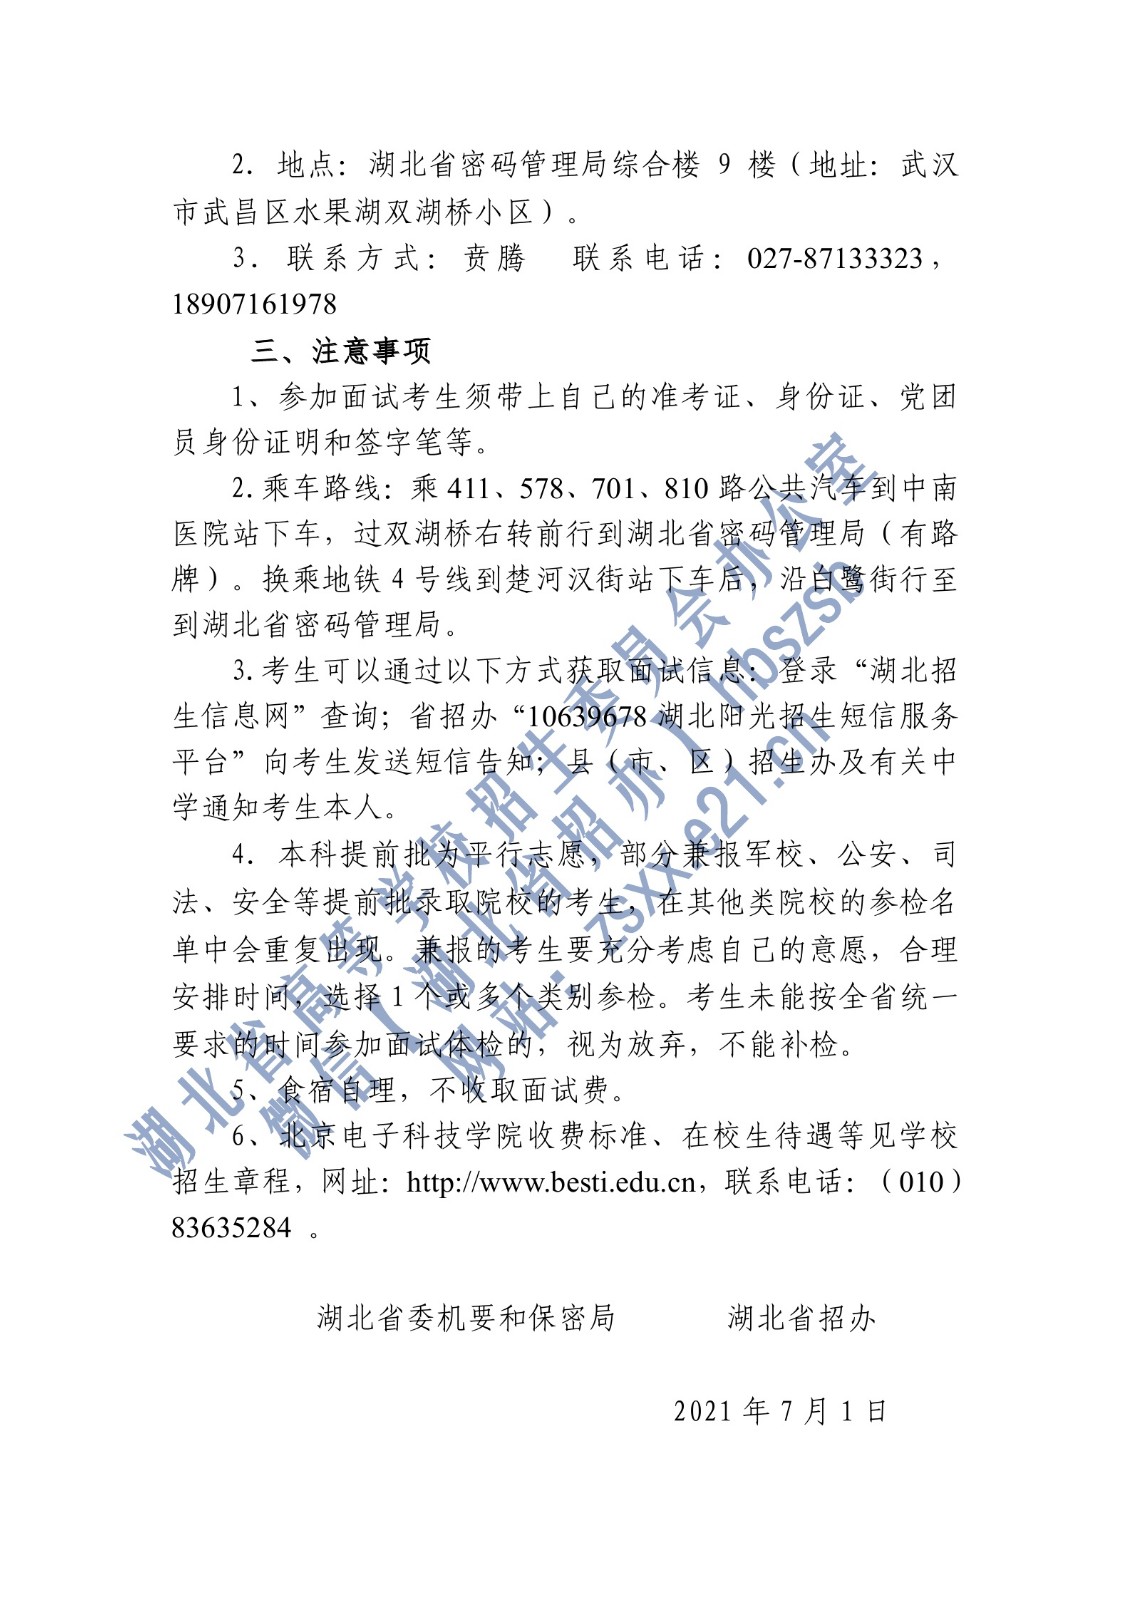 湖北省2021年北京电子科技学院招生面试名单确定原则和有关注意事项公告